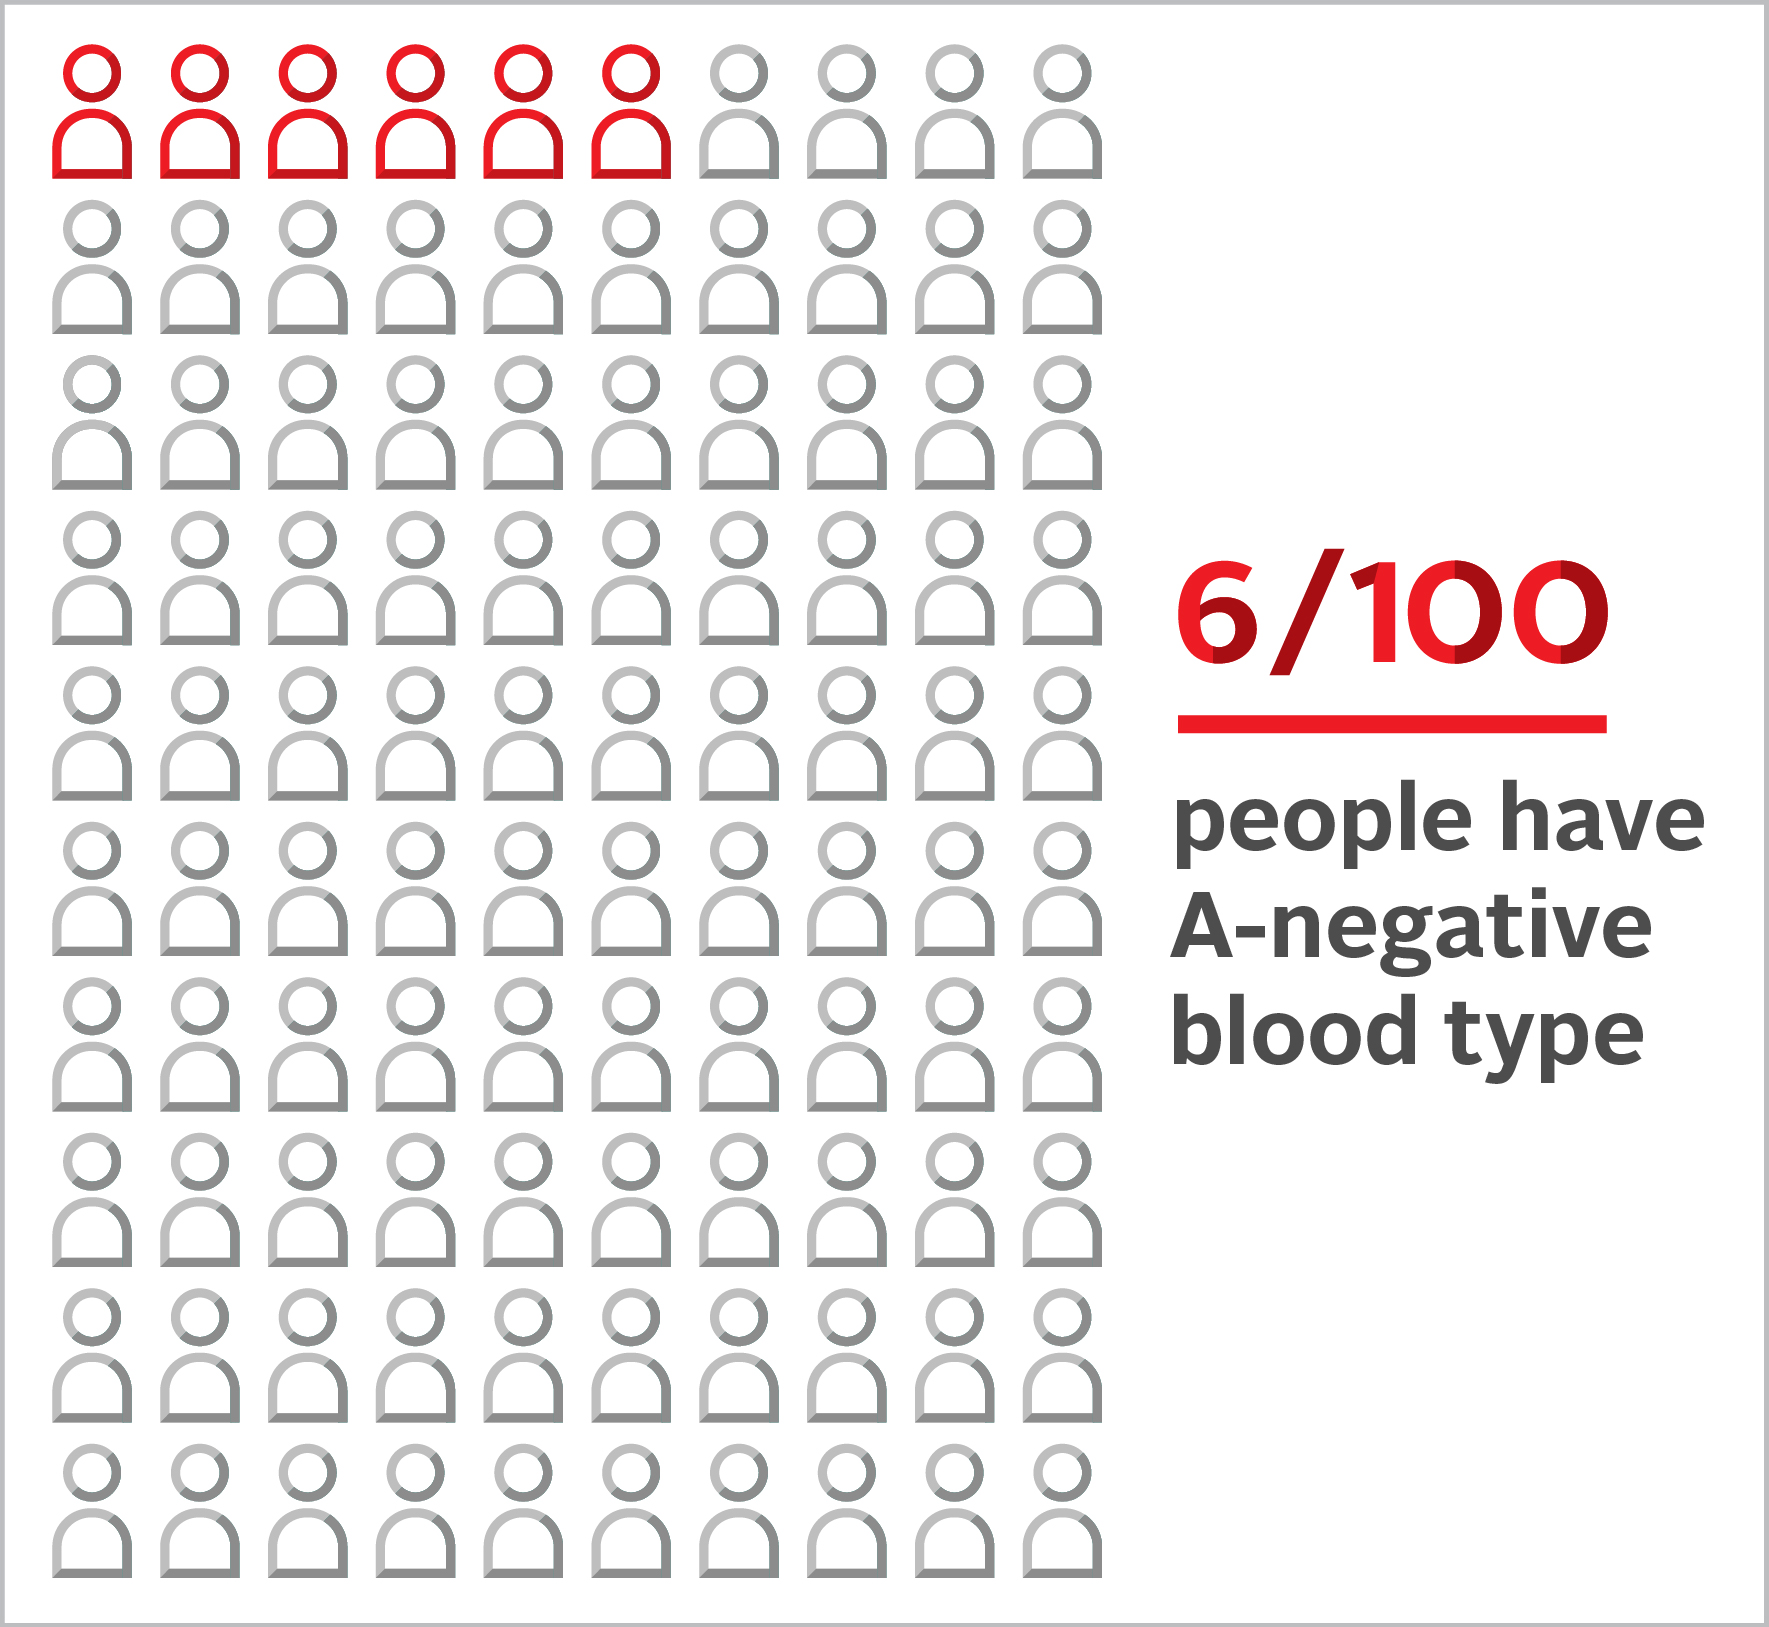 A-negative (A-) blood type